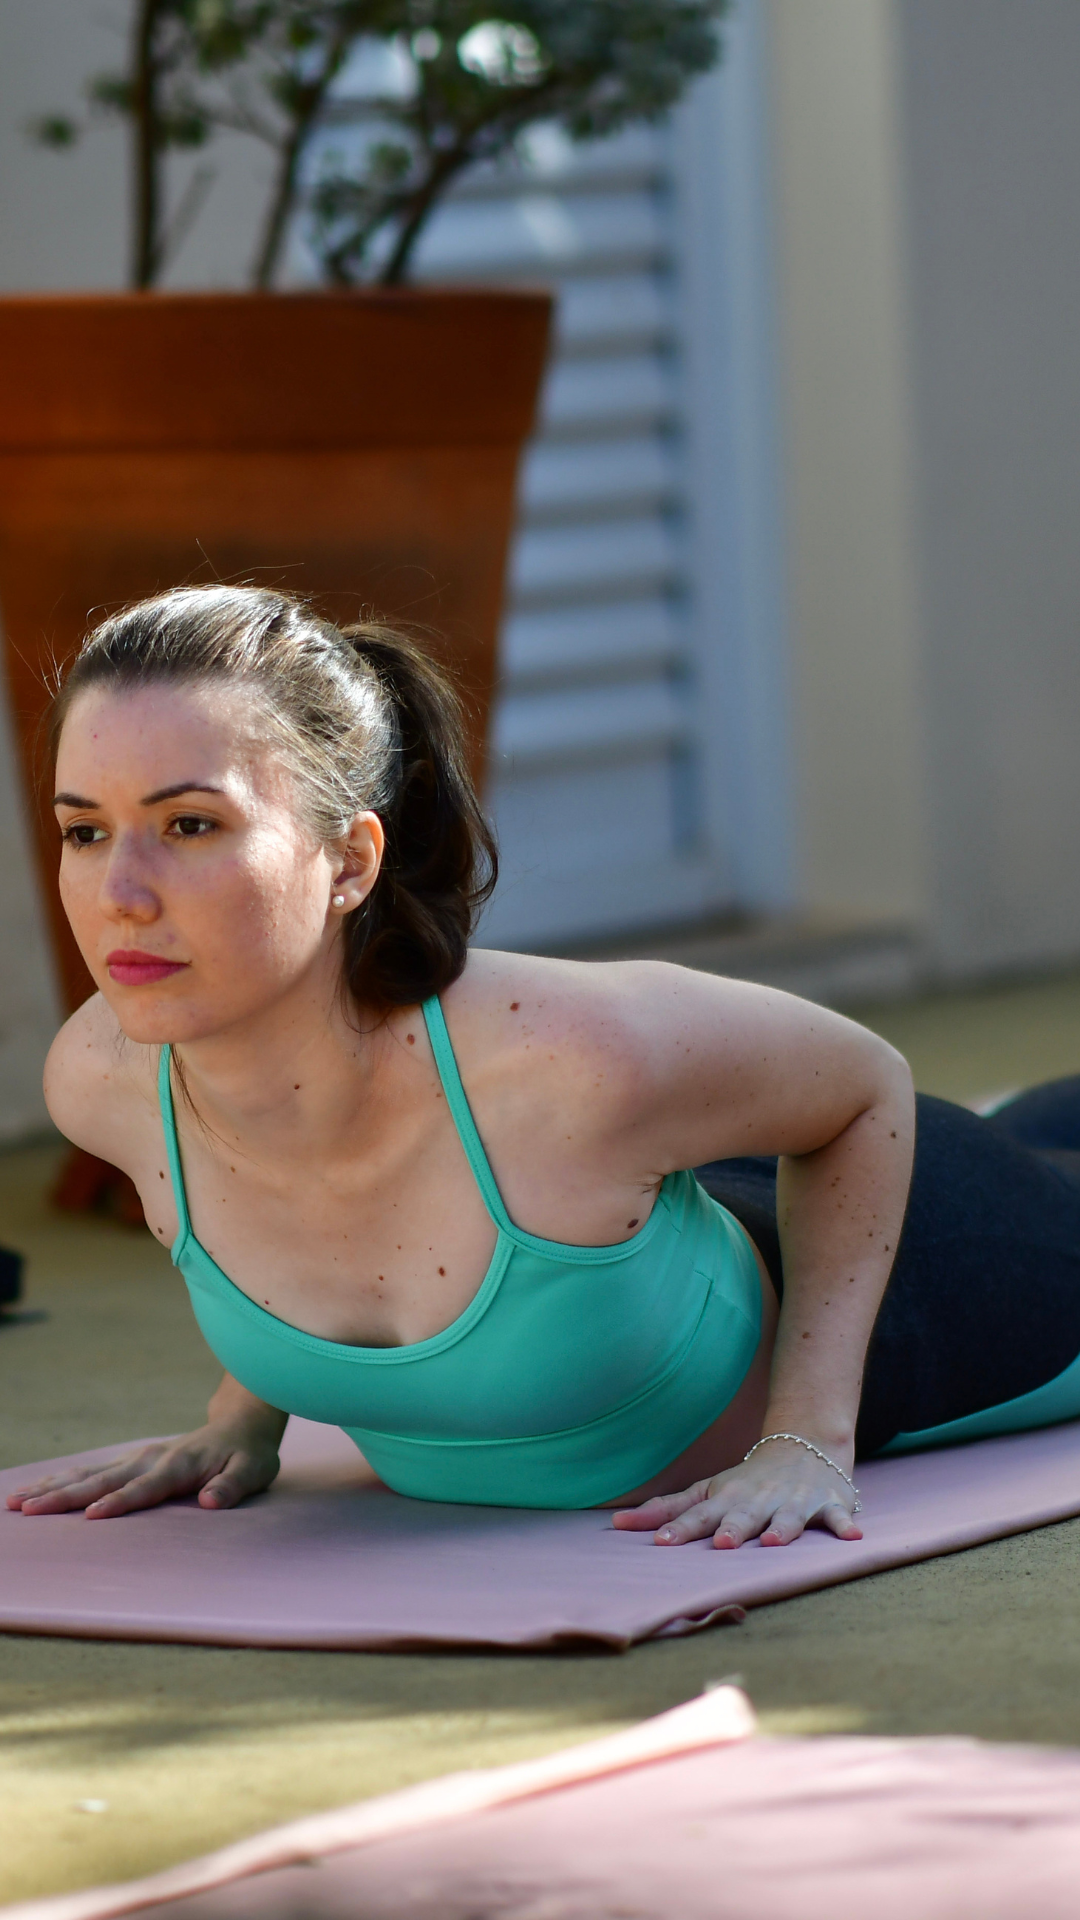 Projeto abre inscrição para prática semanal de posturas e movimentos  terapêuticos baseados no Hatha Yoga — Universidade Federal dos Vales do  Jequitinhonha e Mucuri